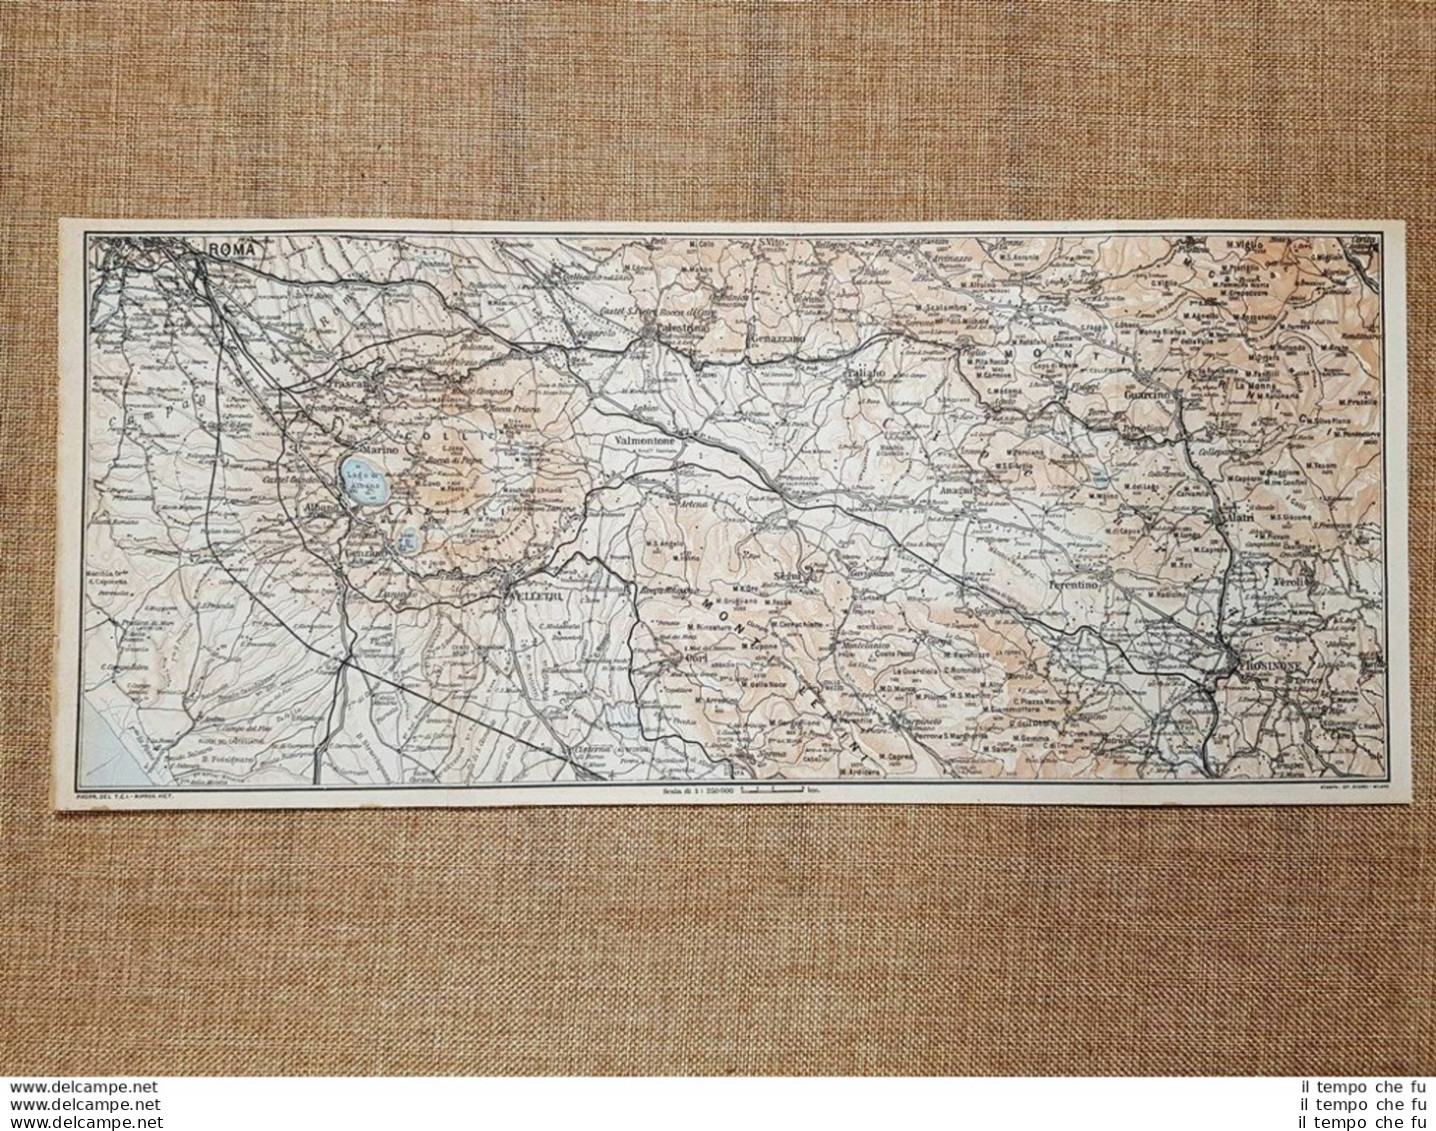 Carta O Cartina Del 1924 Roma Marino Lago Di Albano Nemi Paliano Lazio T.C.I. - Geographical Maps